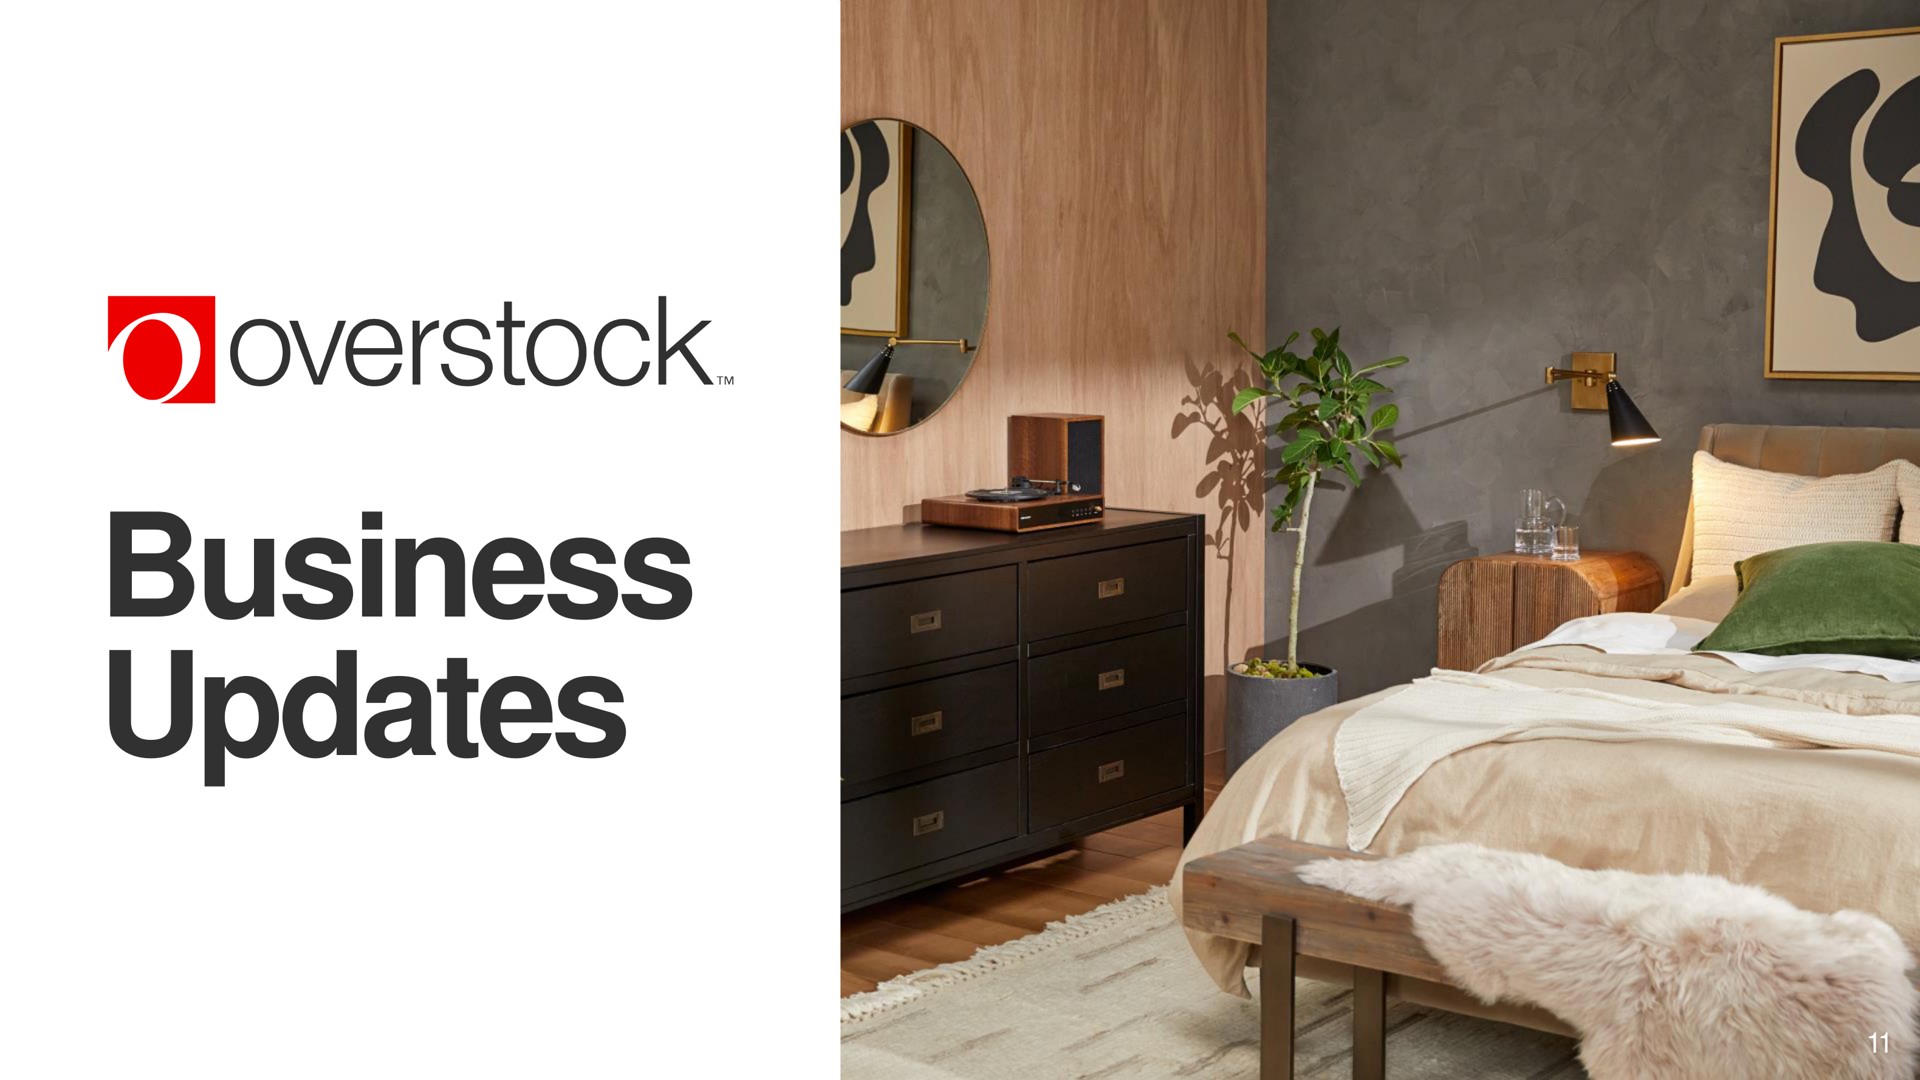 business updates overstock | Overstock